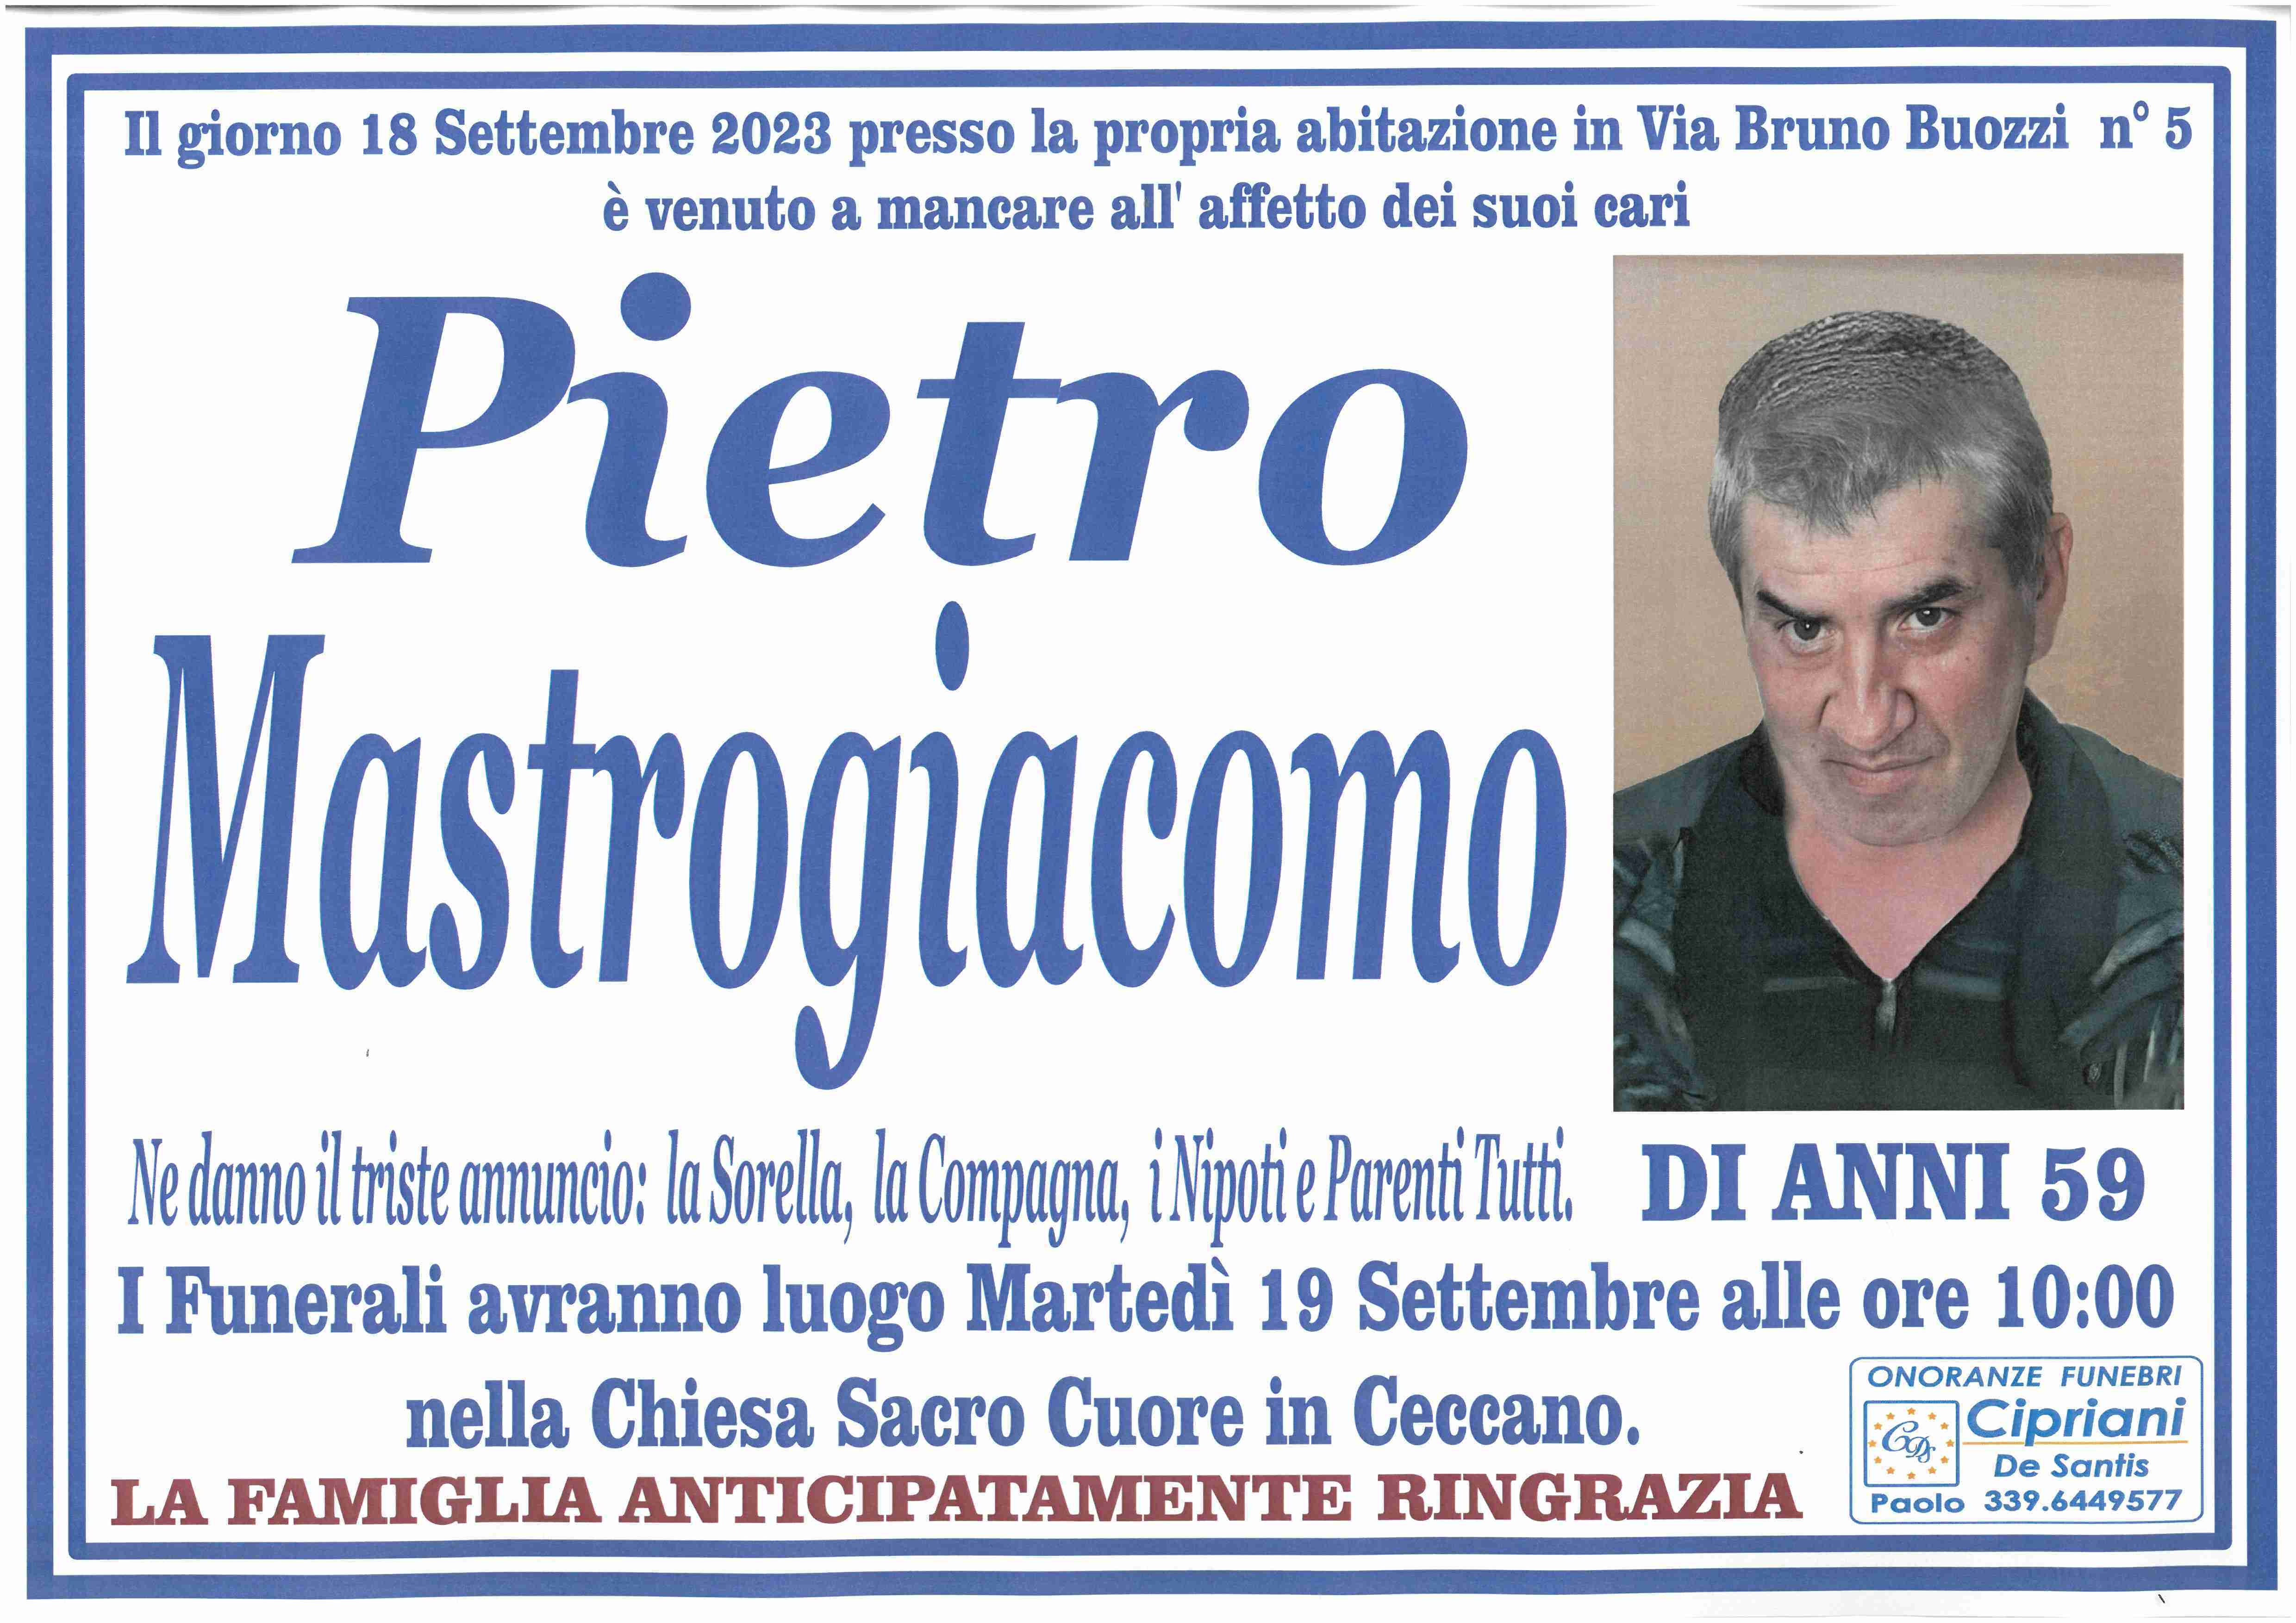 Pietro Mastrogiacomo